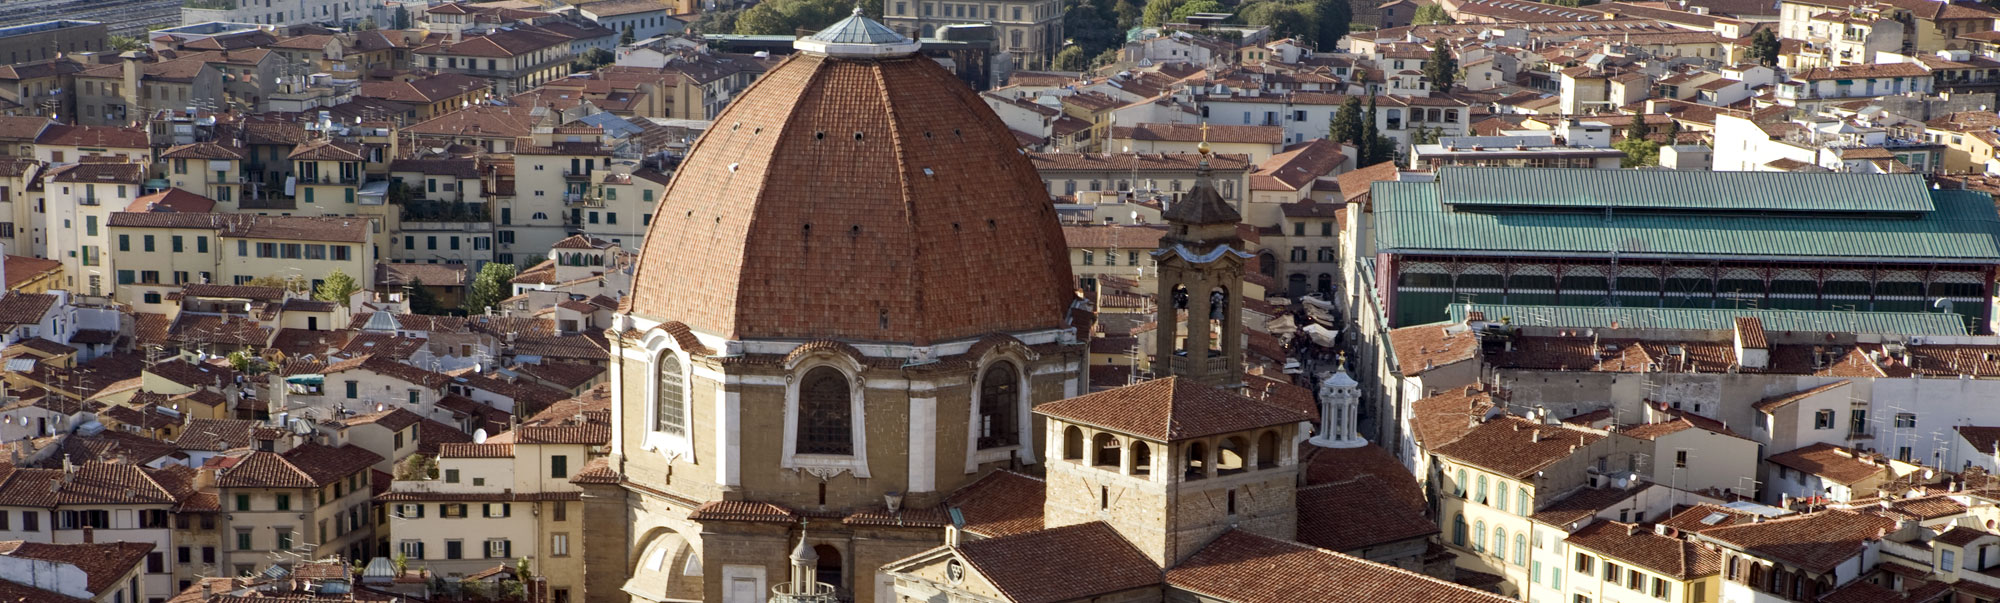 Hotel Palazzo Vecchio | Hotel de tres estrellas centro històrico de Florencia